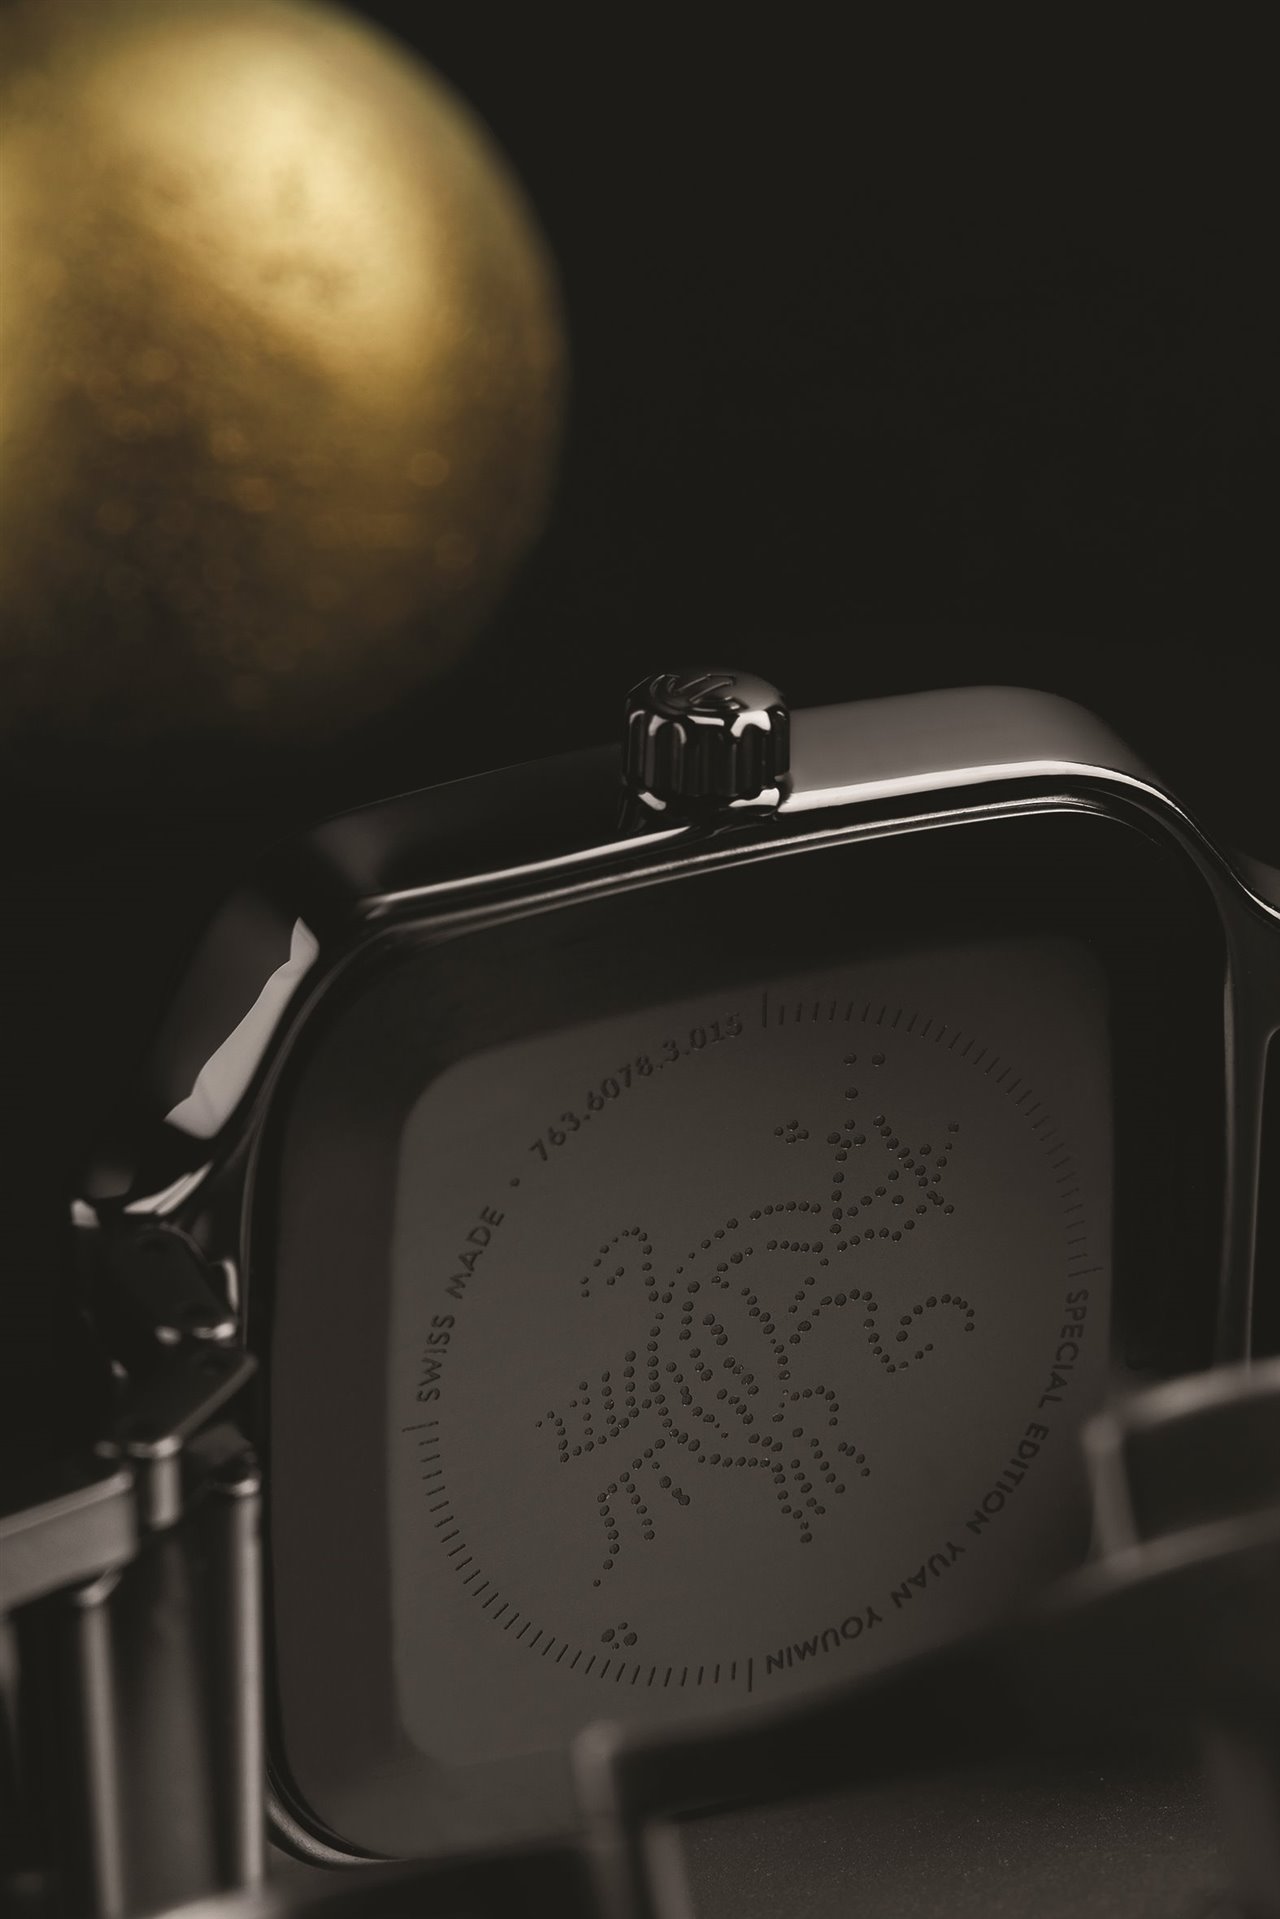 Como remate, el diseñador gráfico Yuan Youmin eligió la imagen de un fénix, el famoso símbolo del renacimiento eterno, para la tapa trasera del reloj.